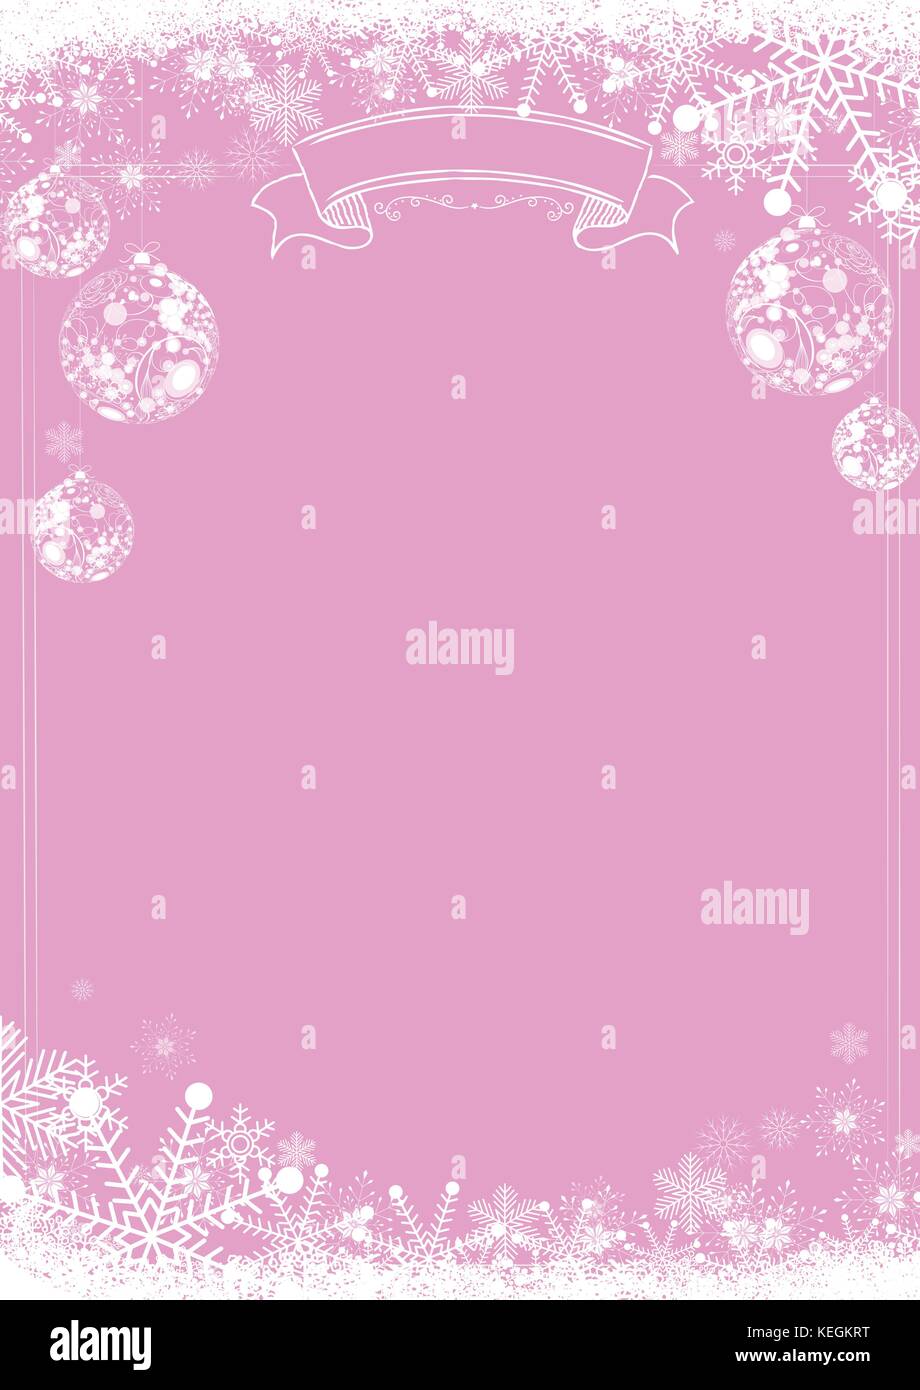 Format A3 Vertikale cafe Menü Classic Pink winterchristmas Hintergrund mit Schneeflocken und Xmas ball Grenze Stock Vektor